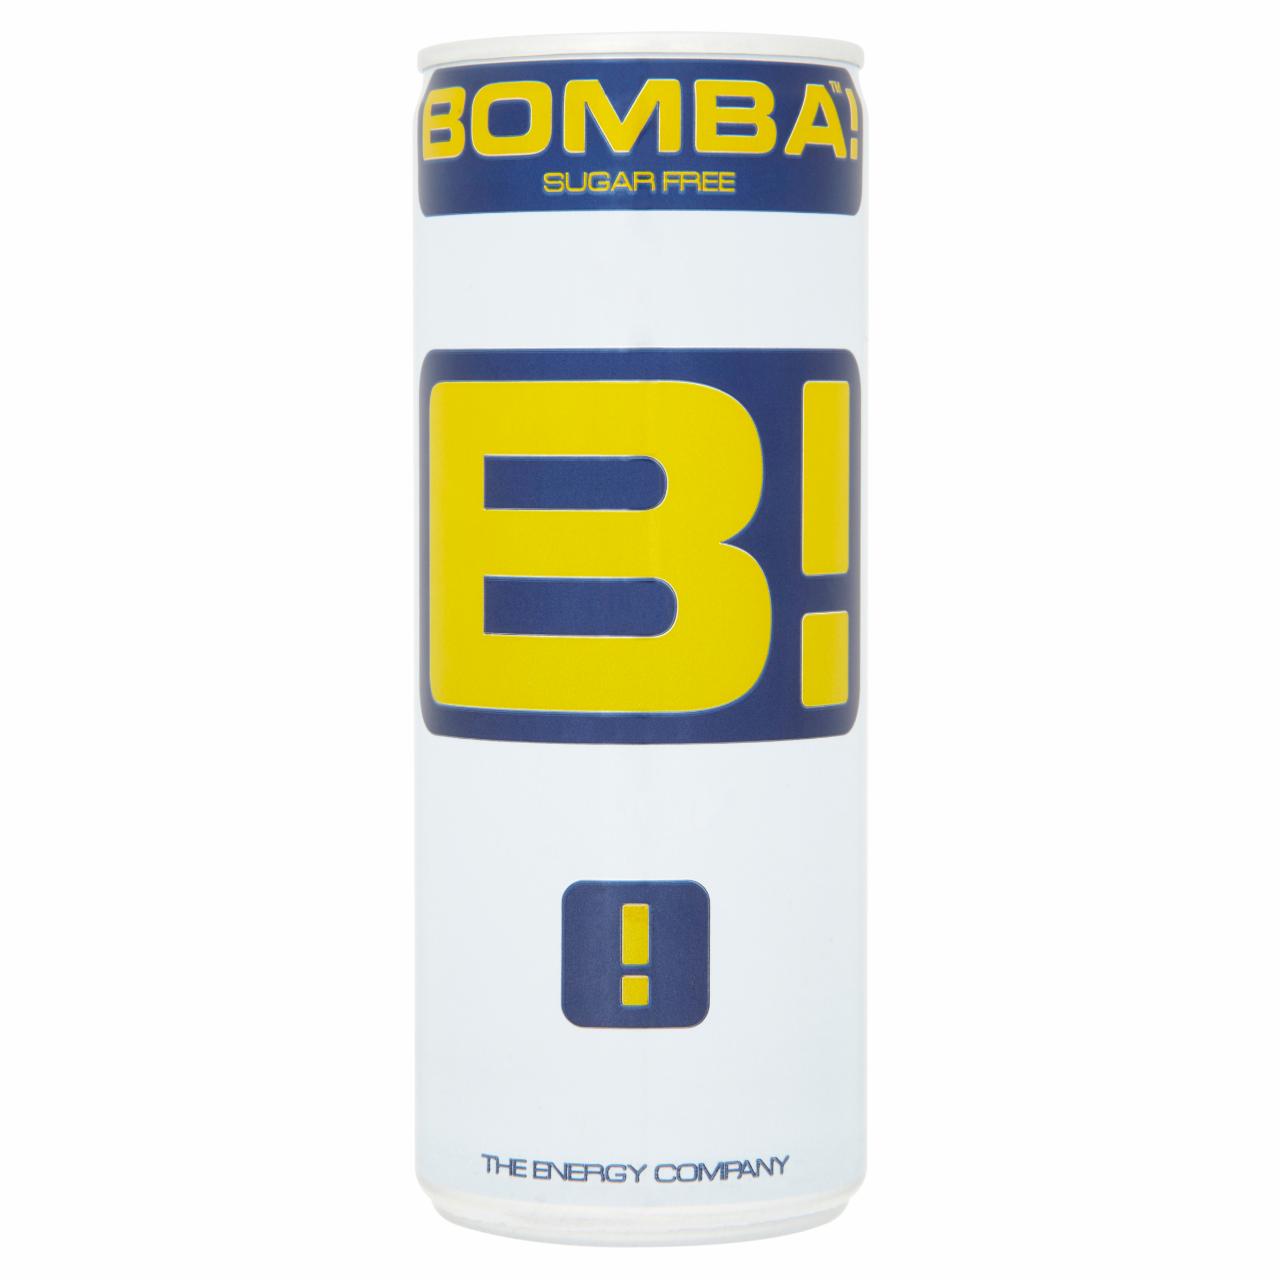 Képek - BOMBA! Zero koffeintartalmú, tutti-frutti ízű cukormentes szénsavas ital édesítőszerrel 250 ml